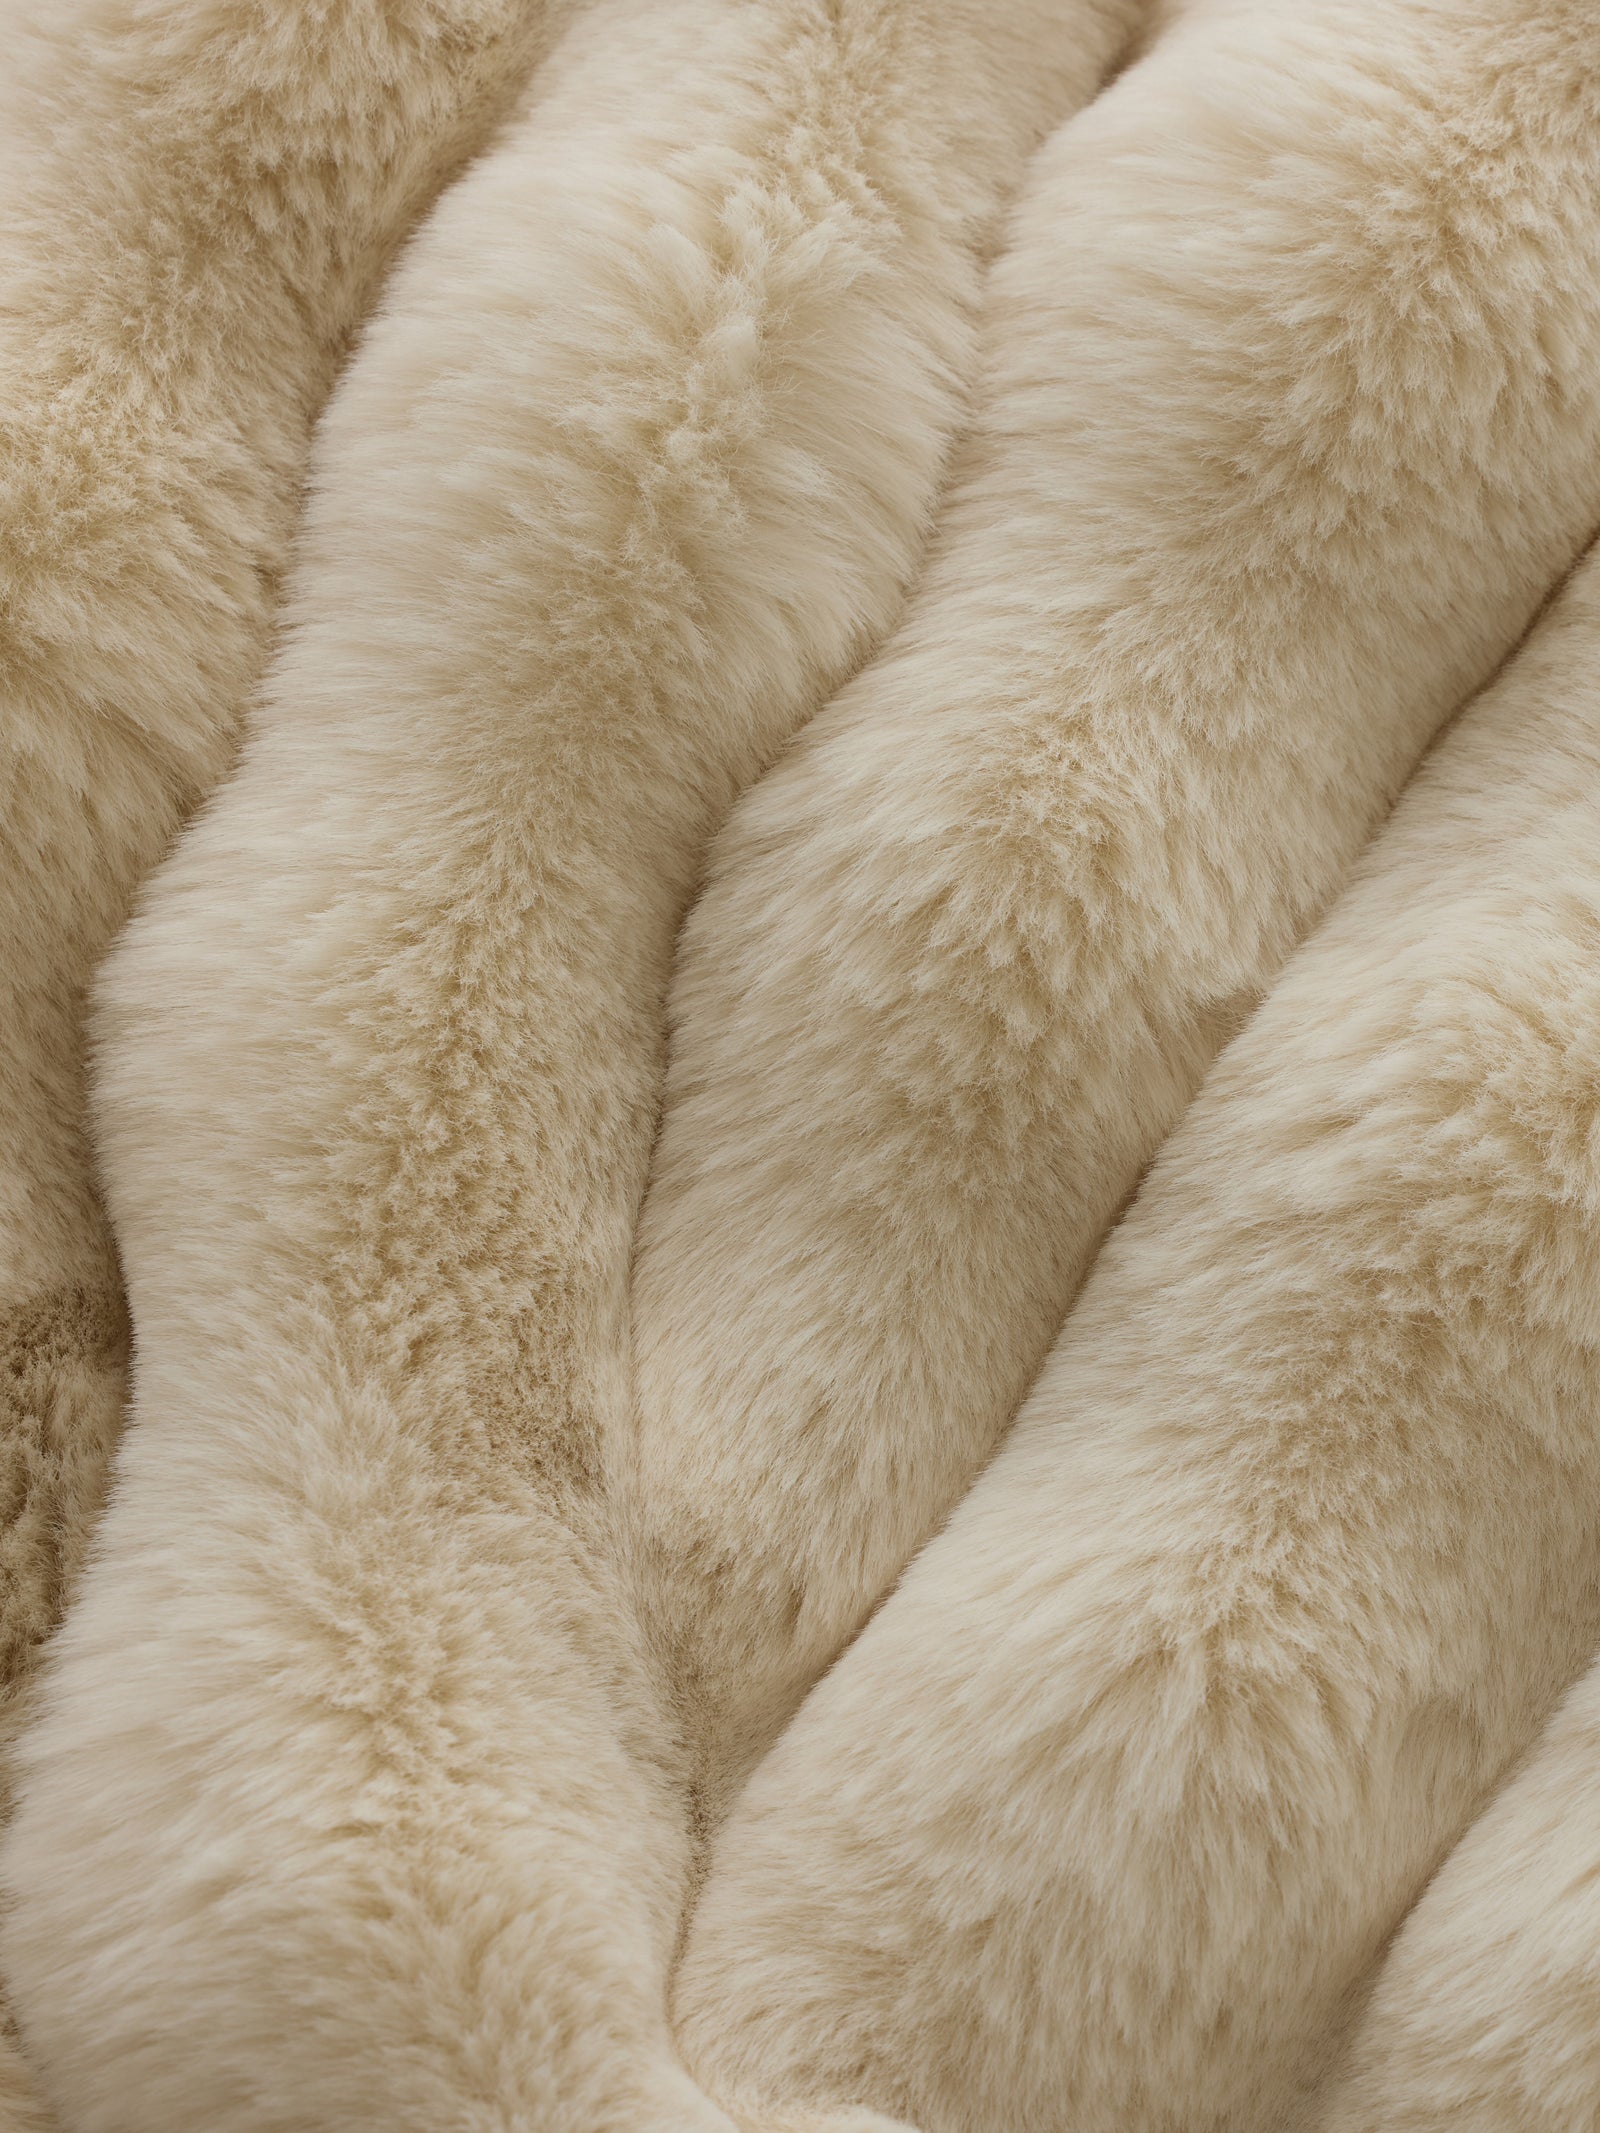 Creme lush faux fur blanket close up 